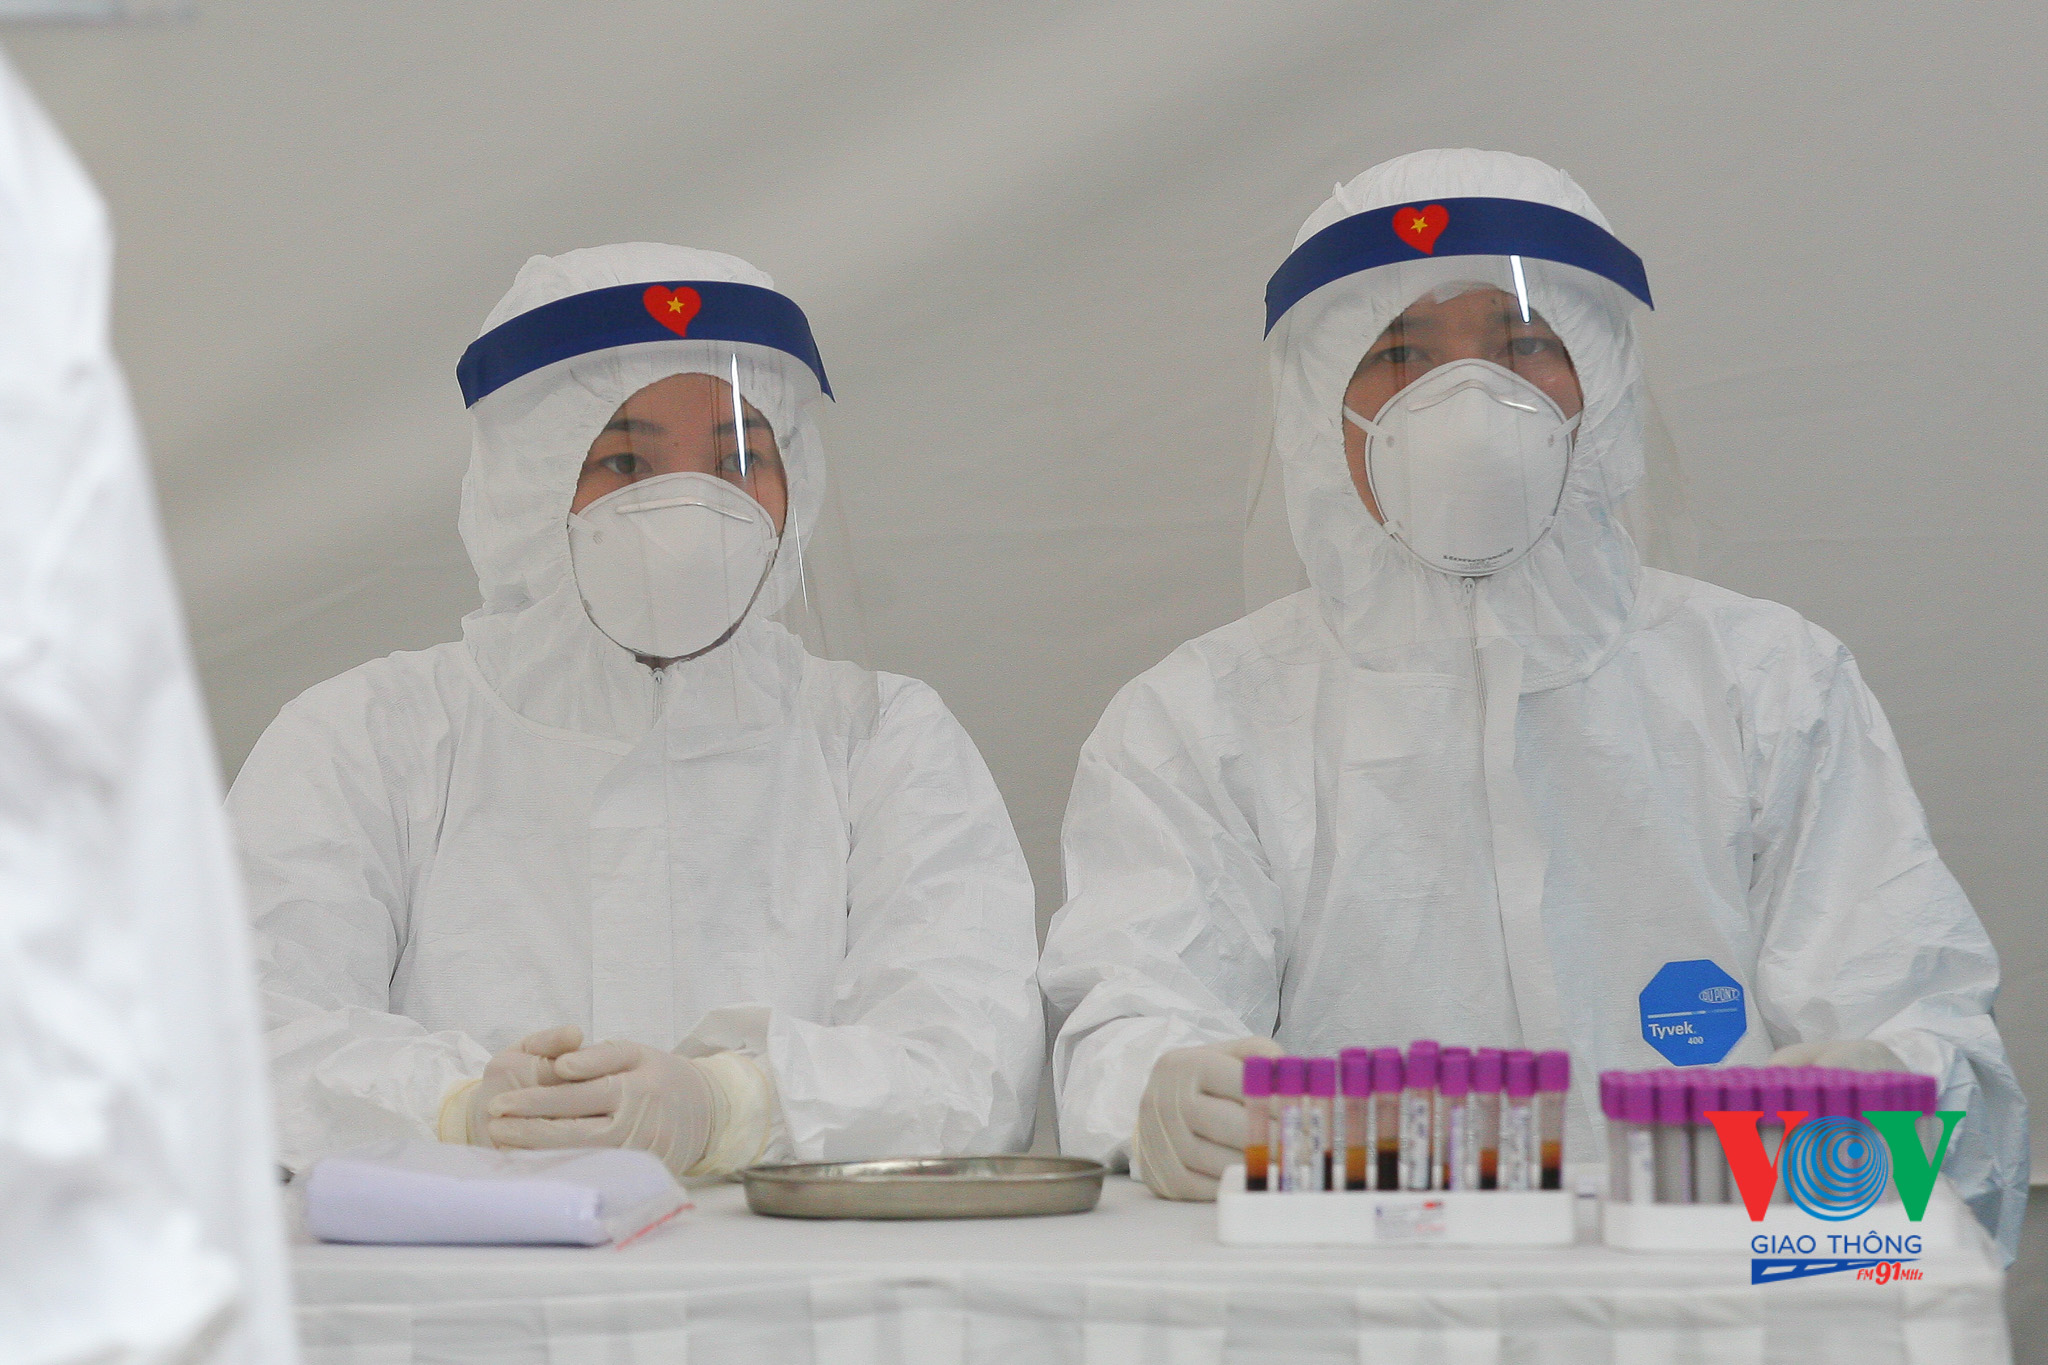 Đoàn gồm các chuyên gia hàng đầu, có kinh nghiệm trong việc điều tra dịch tễ, cách ly, điều trị và xét nghiệm virus SARS-CoV-2